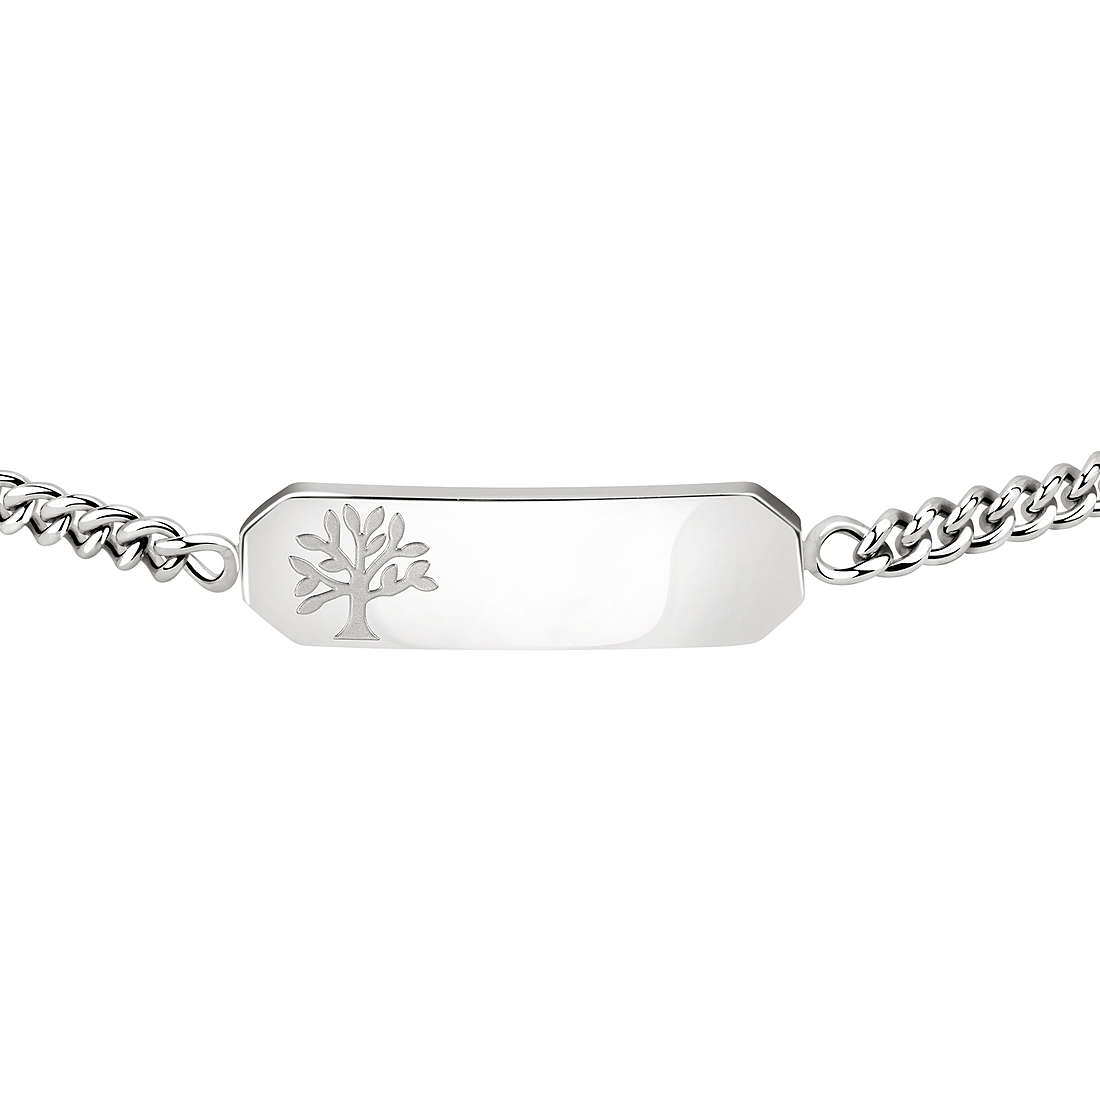 bracelet woman jewellery Sector Basic SZS55